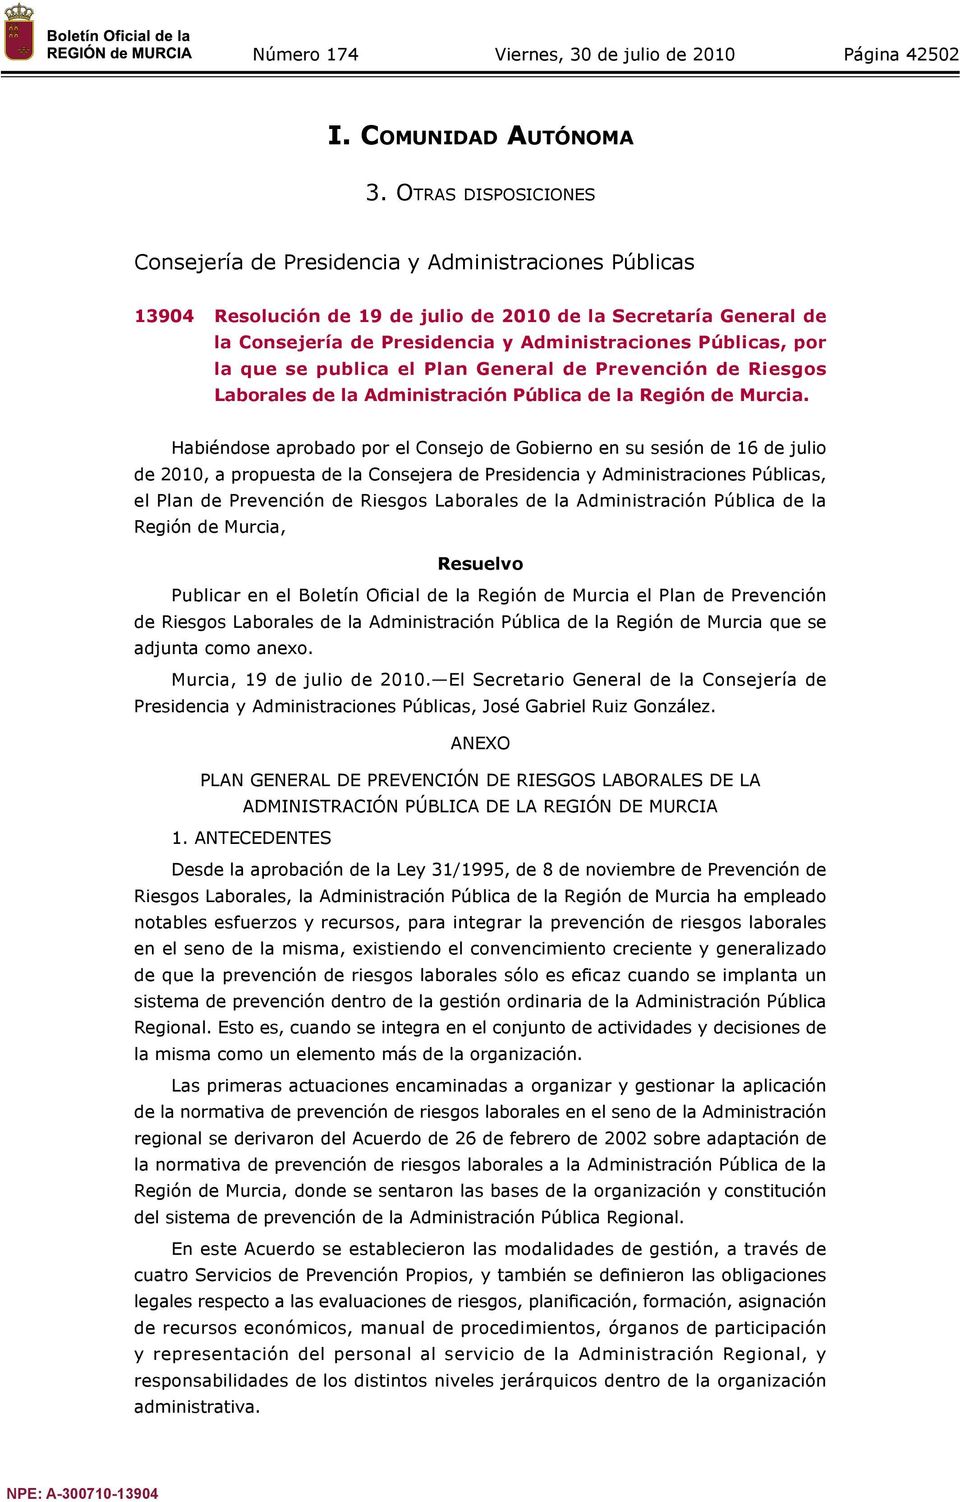 Públicas, por la que se publica el Plan General de Prevención de Riesgos Laborales de la Administración Pública de la Región de Murcia.